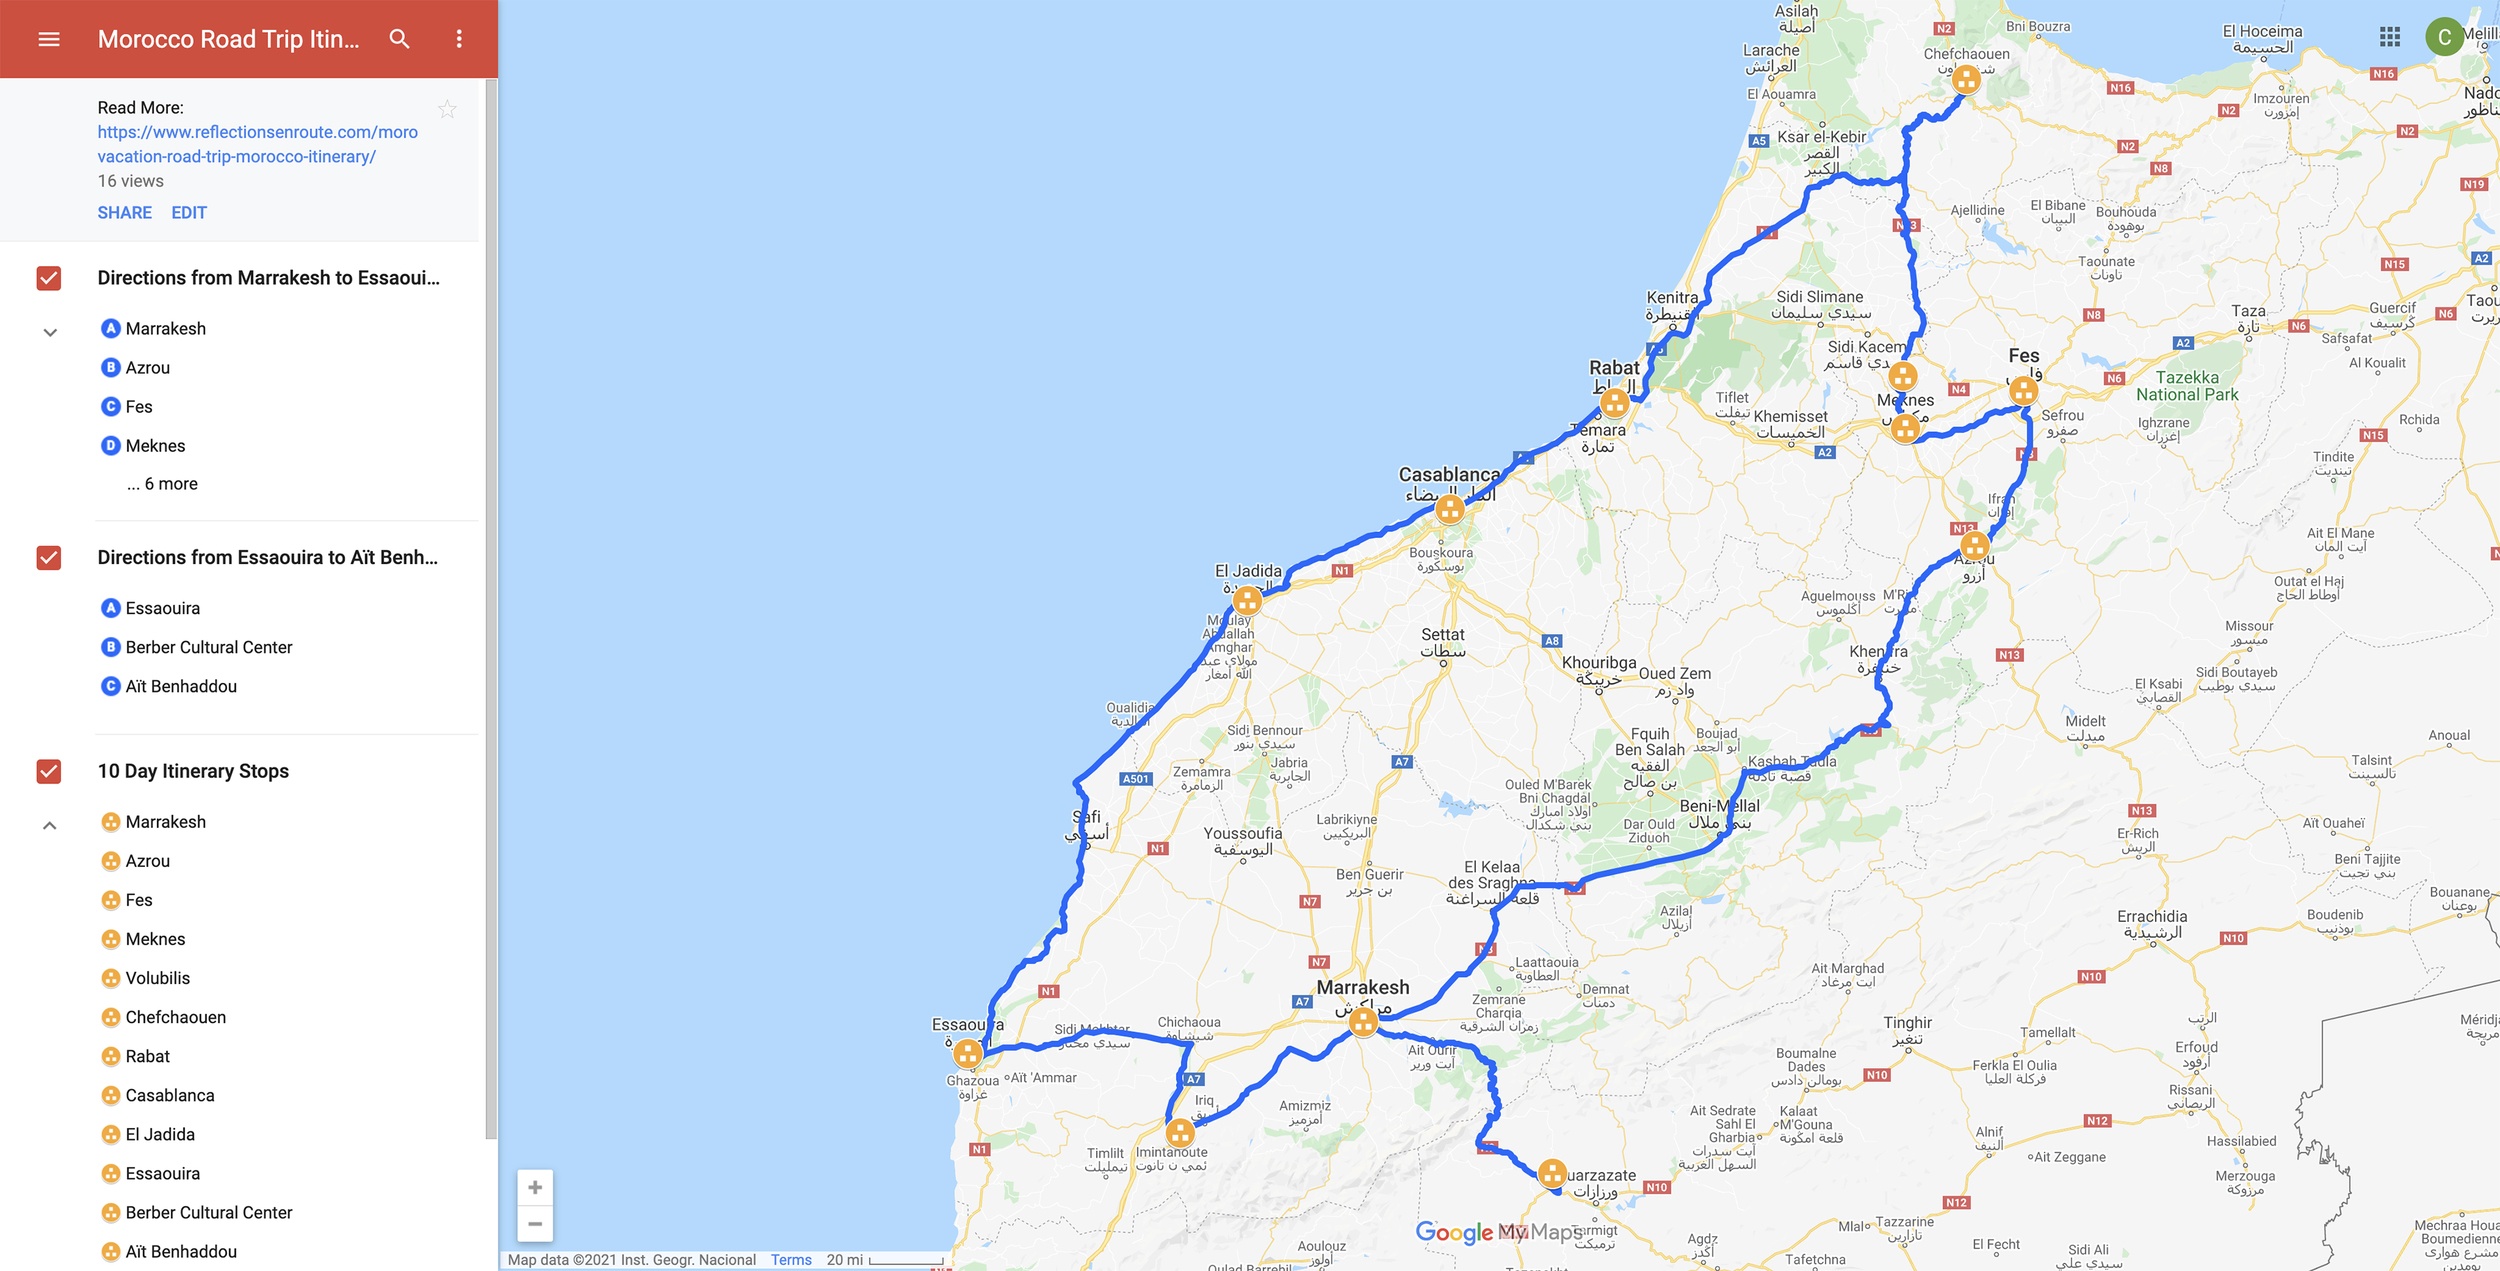 Map of Morocco 2 week road trip.